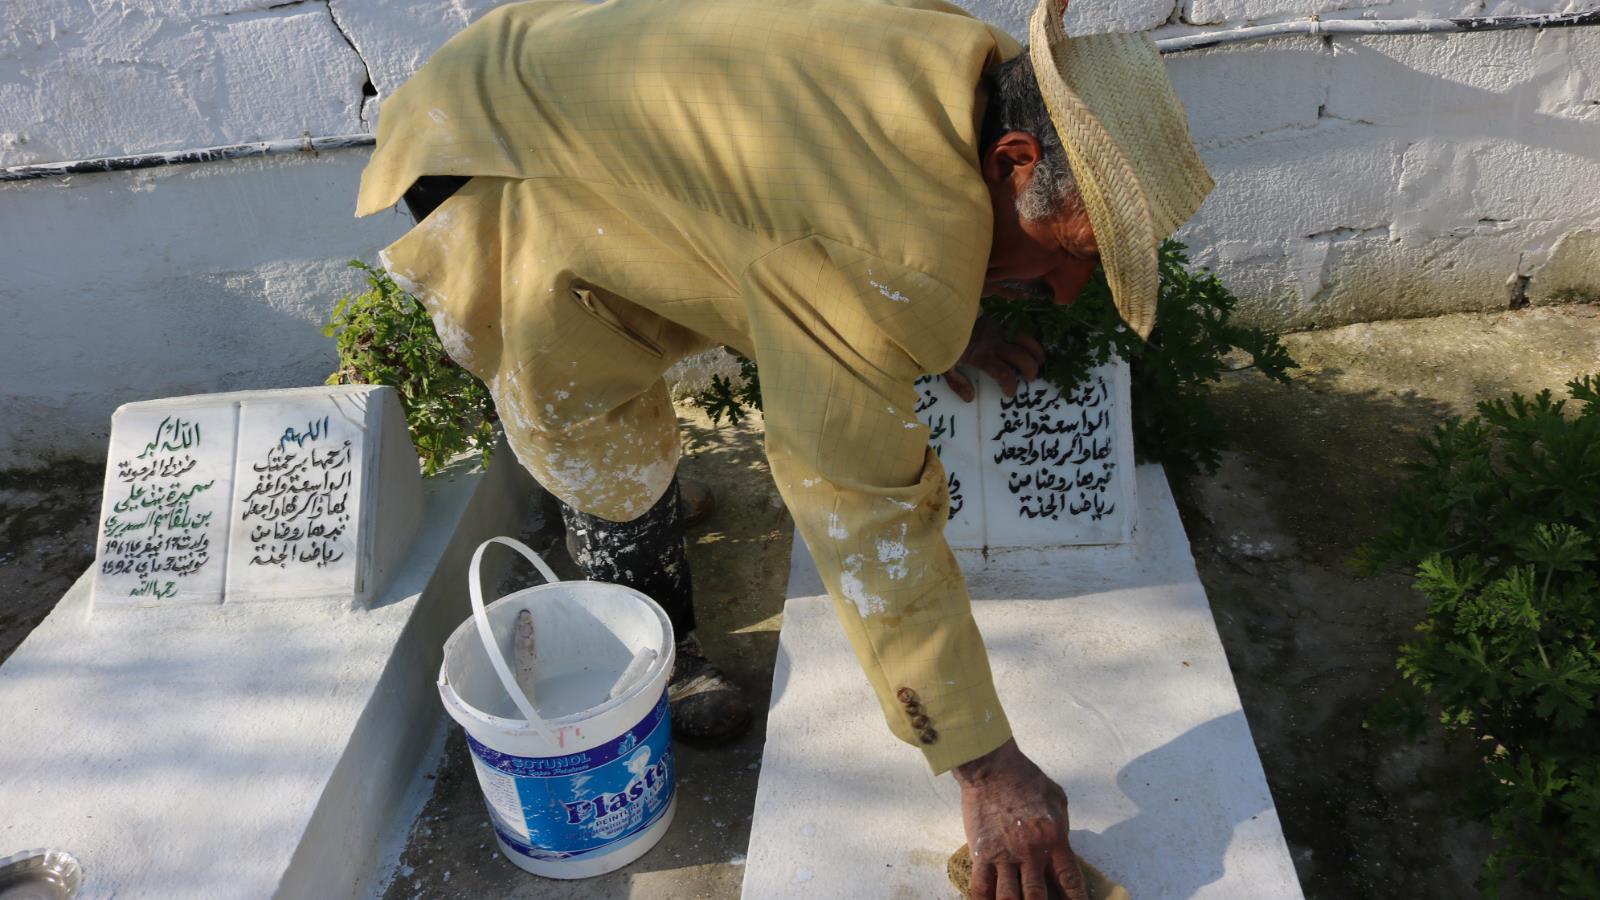  يحرص العم محمد على تنظيف القبور وصيانتها بحسب رغبة أقارب الميت